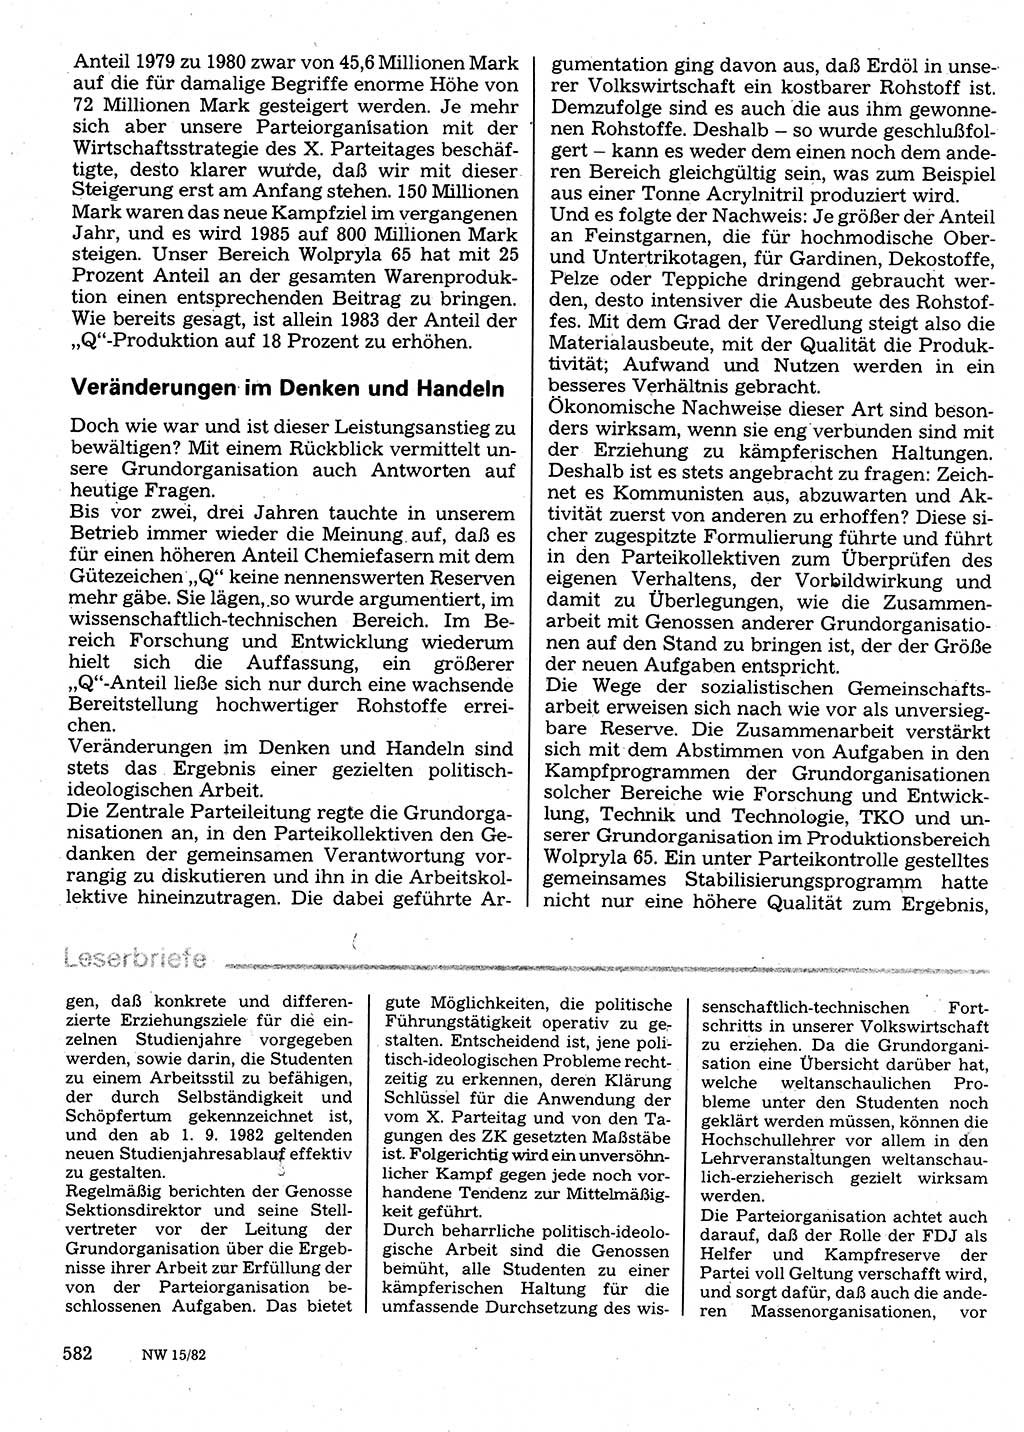 Neuer Weg (NW), Organ des Zentralkomitees (ZK) der SED (Sozialistische Einheitspartei Deutschlands) für Fragen des Parteilebens, 37. Jahrgang [Deutsche Demokratische Republik (DDR)] 1982, Seite 582 (NW ZK SED DDR 1982, S. 582)